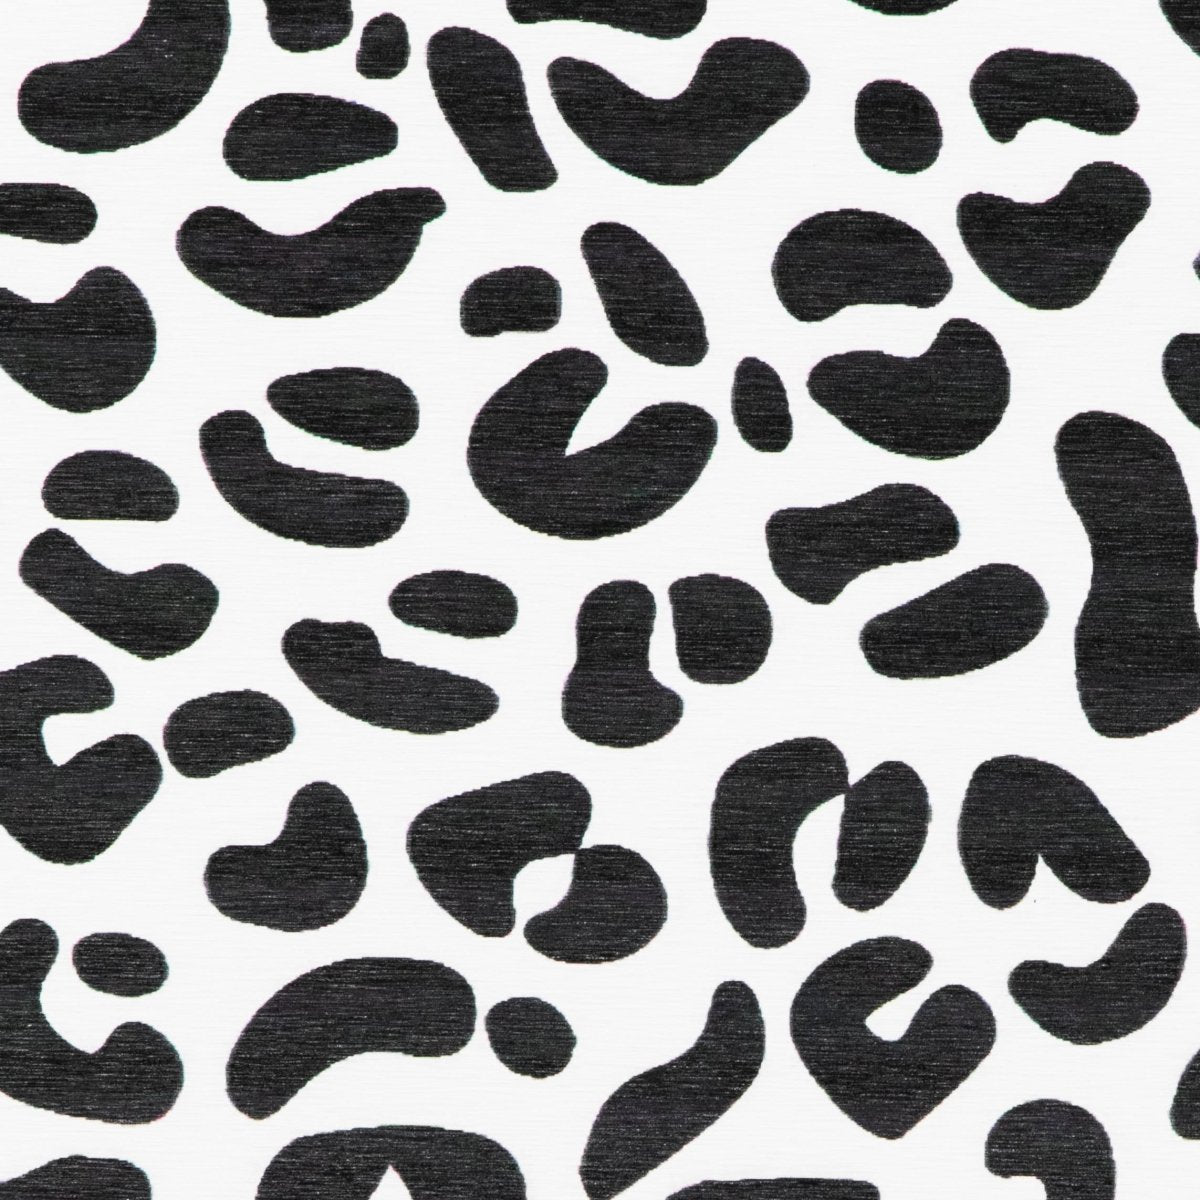 Leopard Print Bathmat - Cheetah Print Bath Mat - Cheetah Shower Mats - Cheetah Bathroom - White Stone Non Slip Bath Mat - Animal Print Mat - Slips Away - Bath mat - 1330572476 -